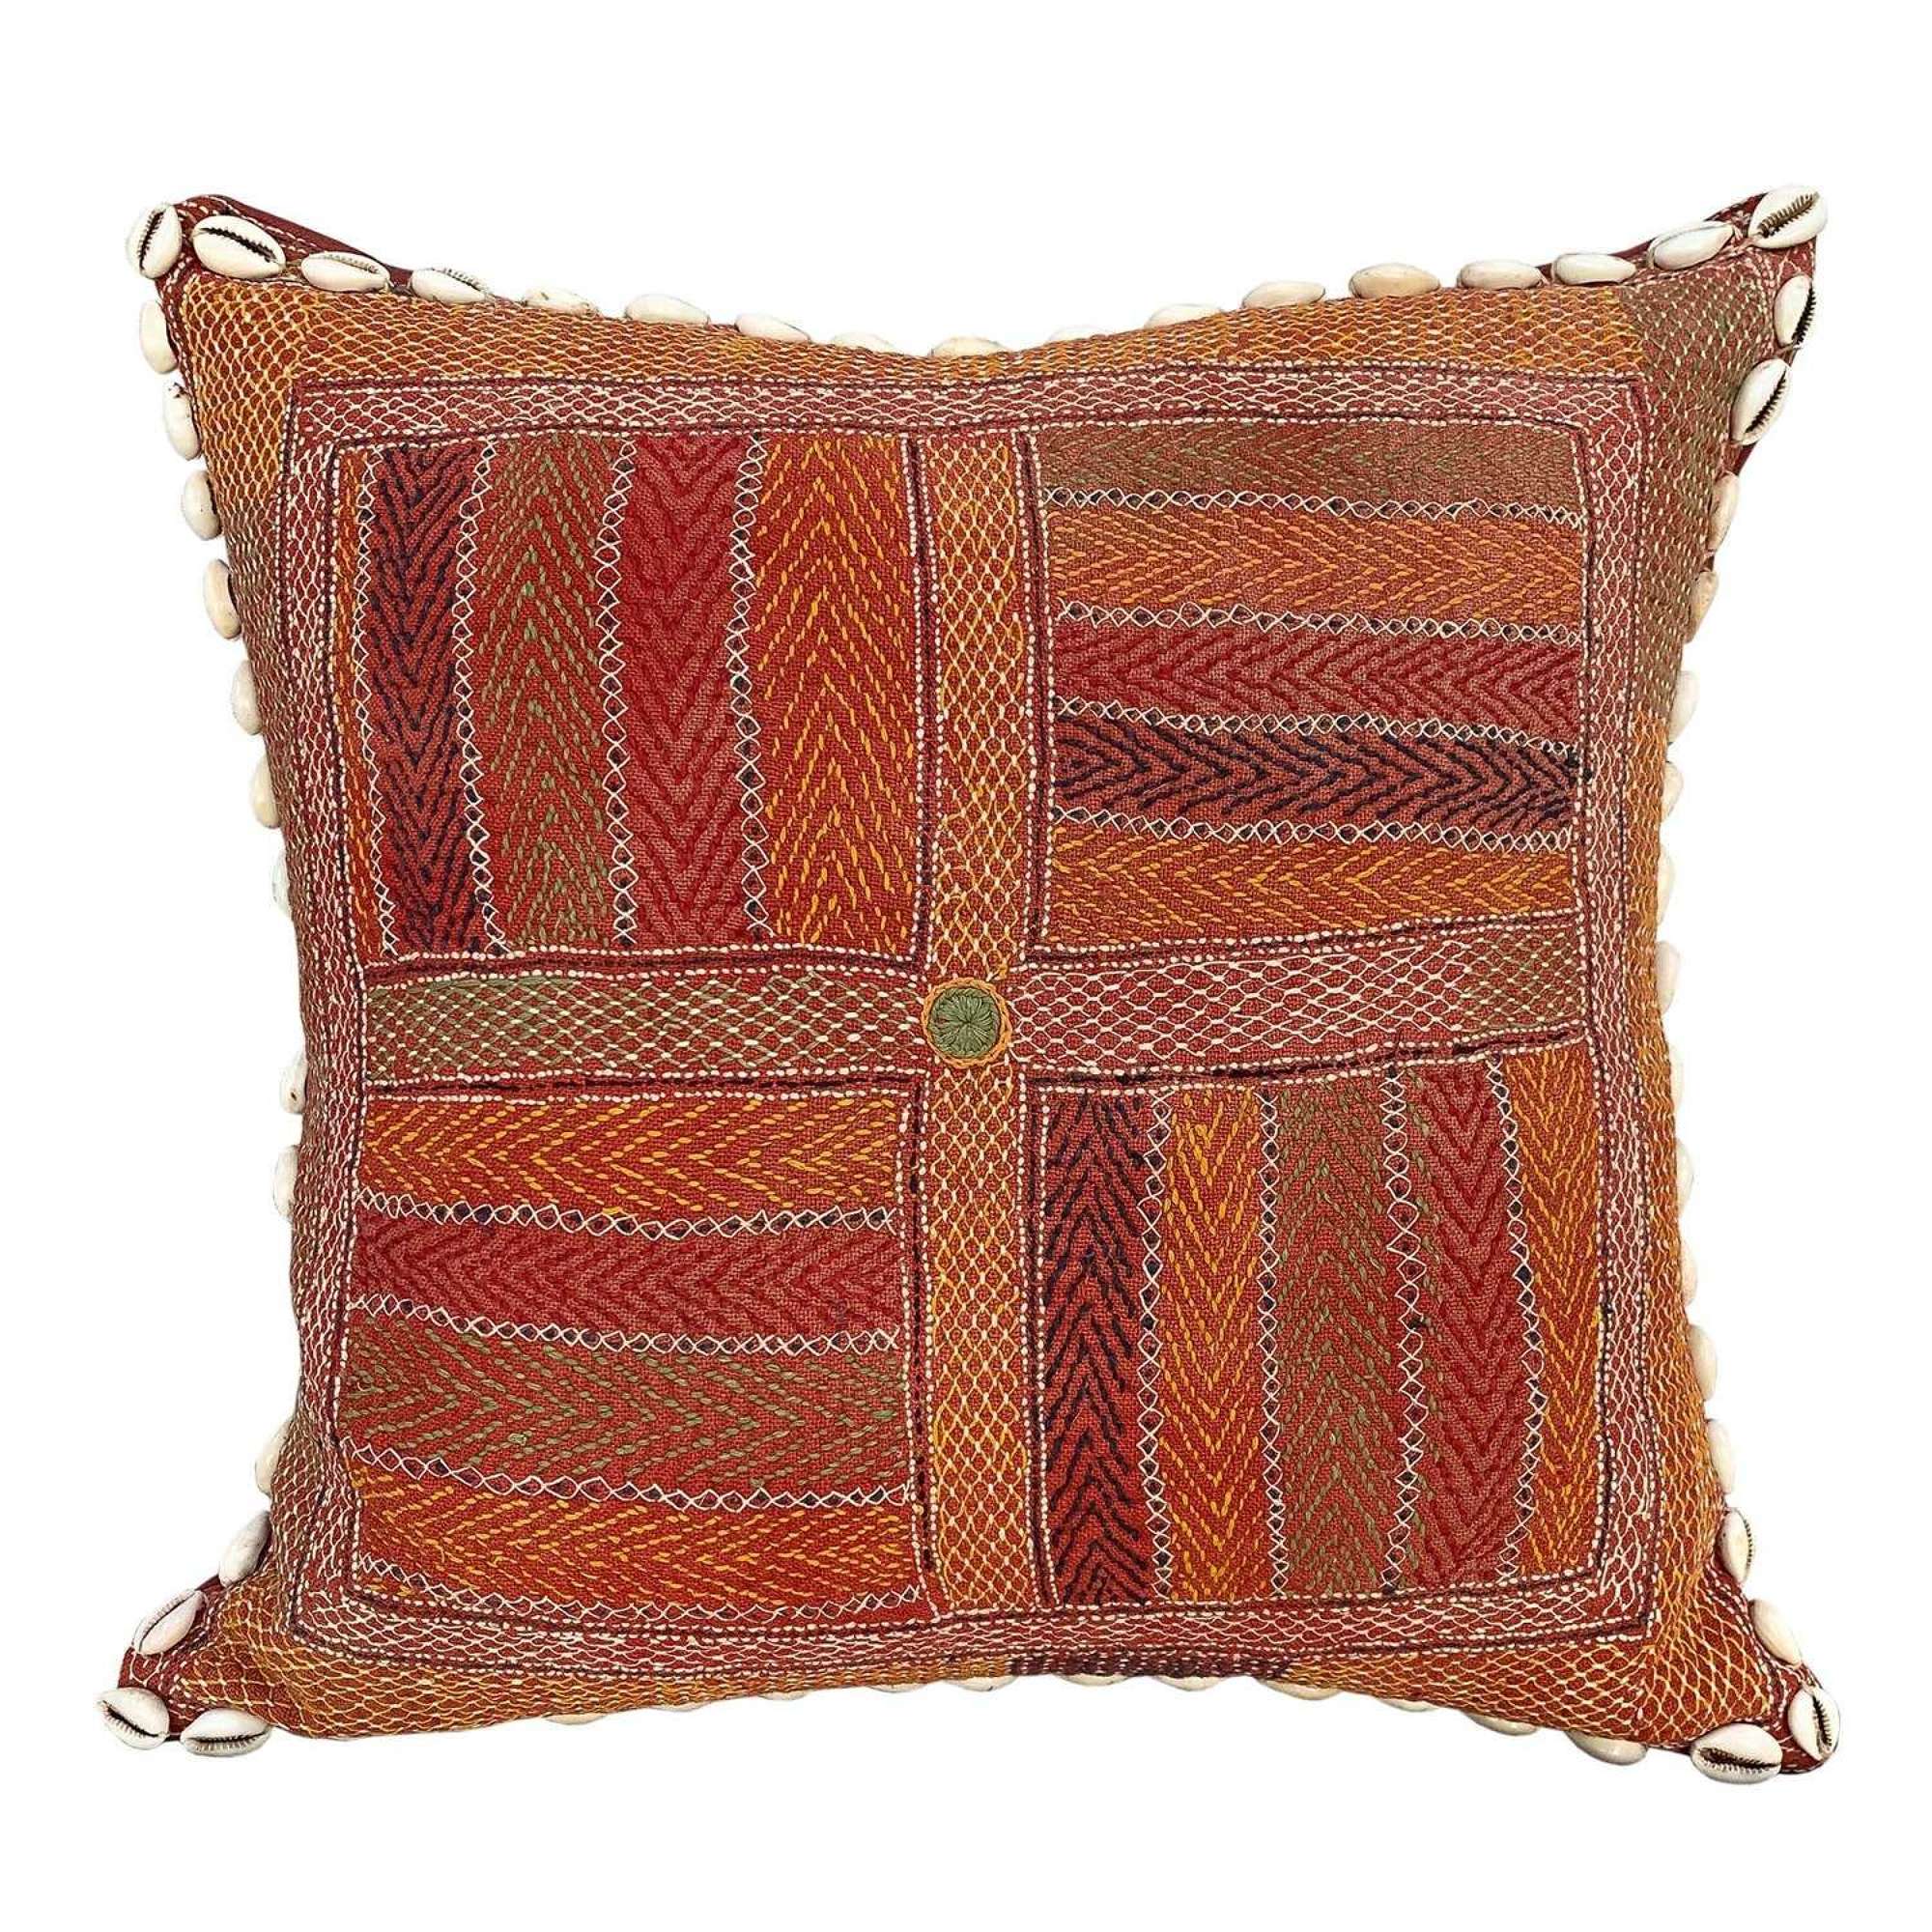 Banjara kalchi cushion